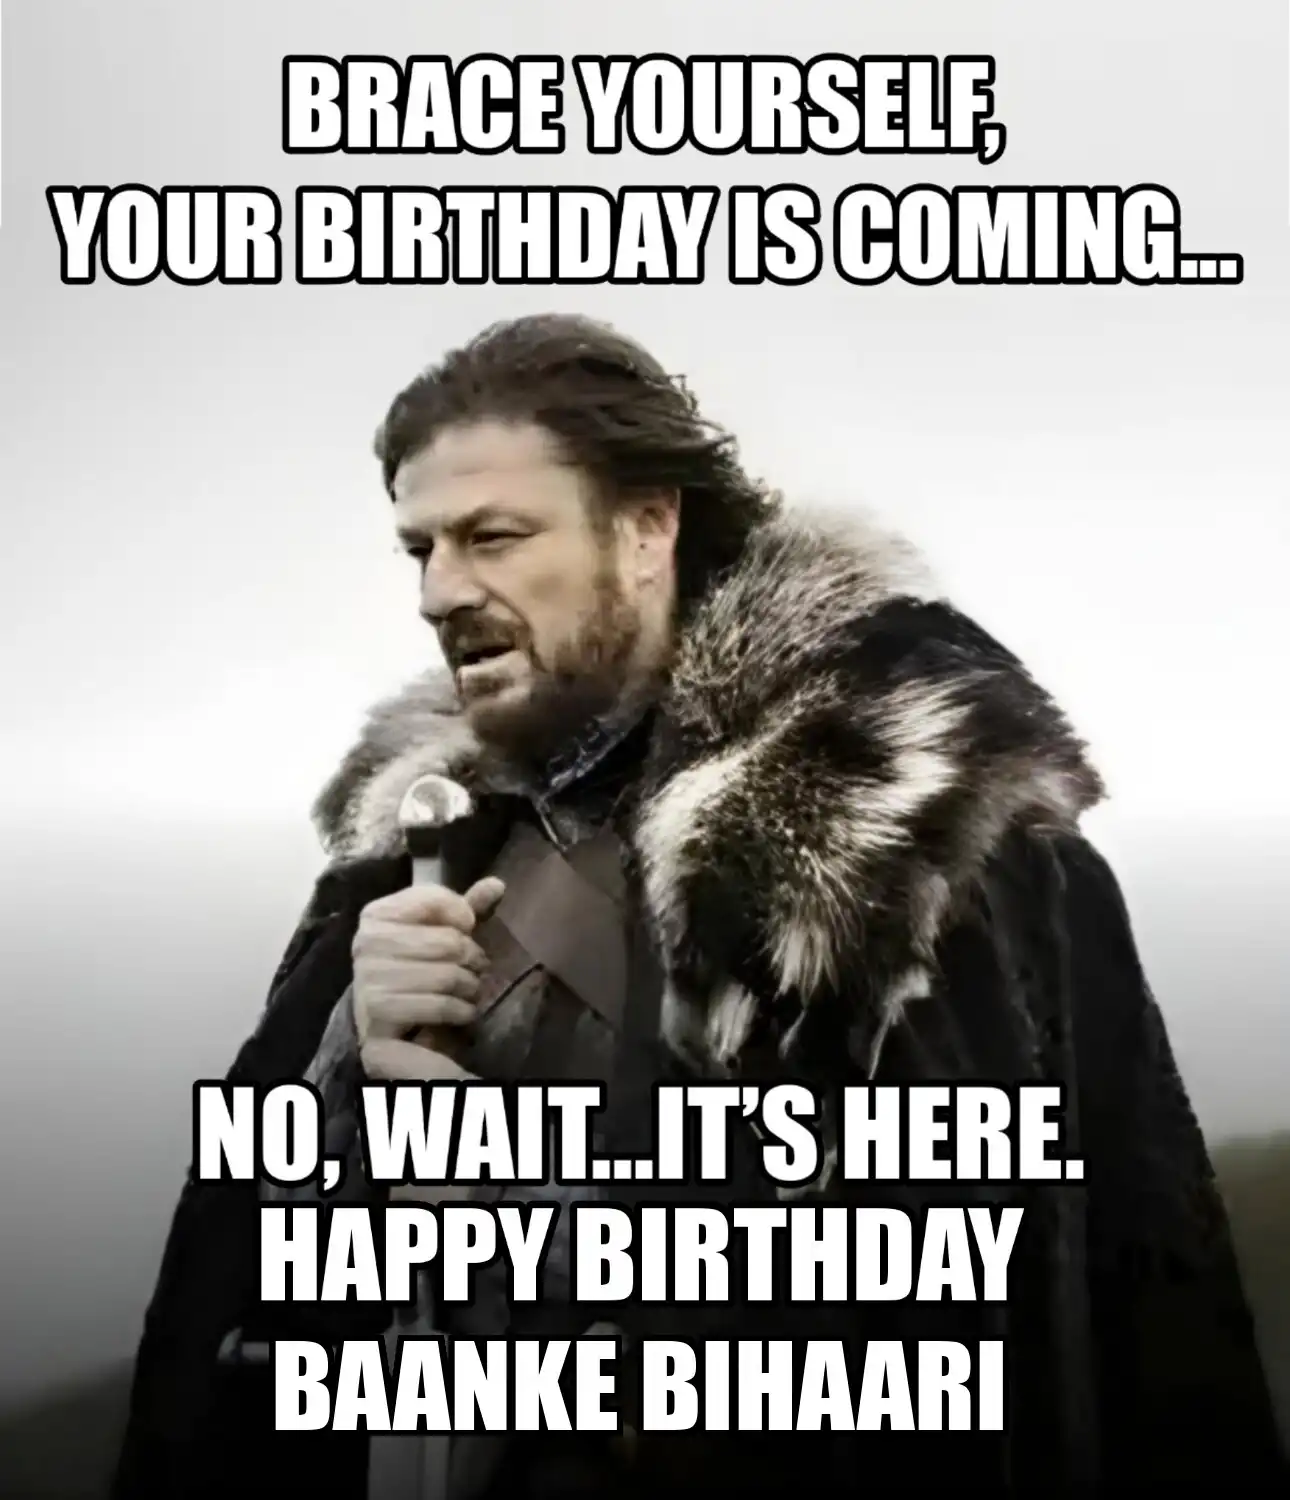 Happy Birthday Baanke Bihaari Brace Yourself Your Birthday Is Coming Meme